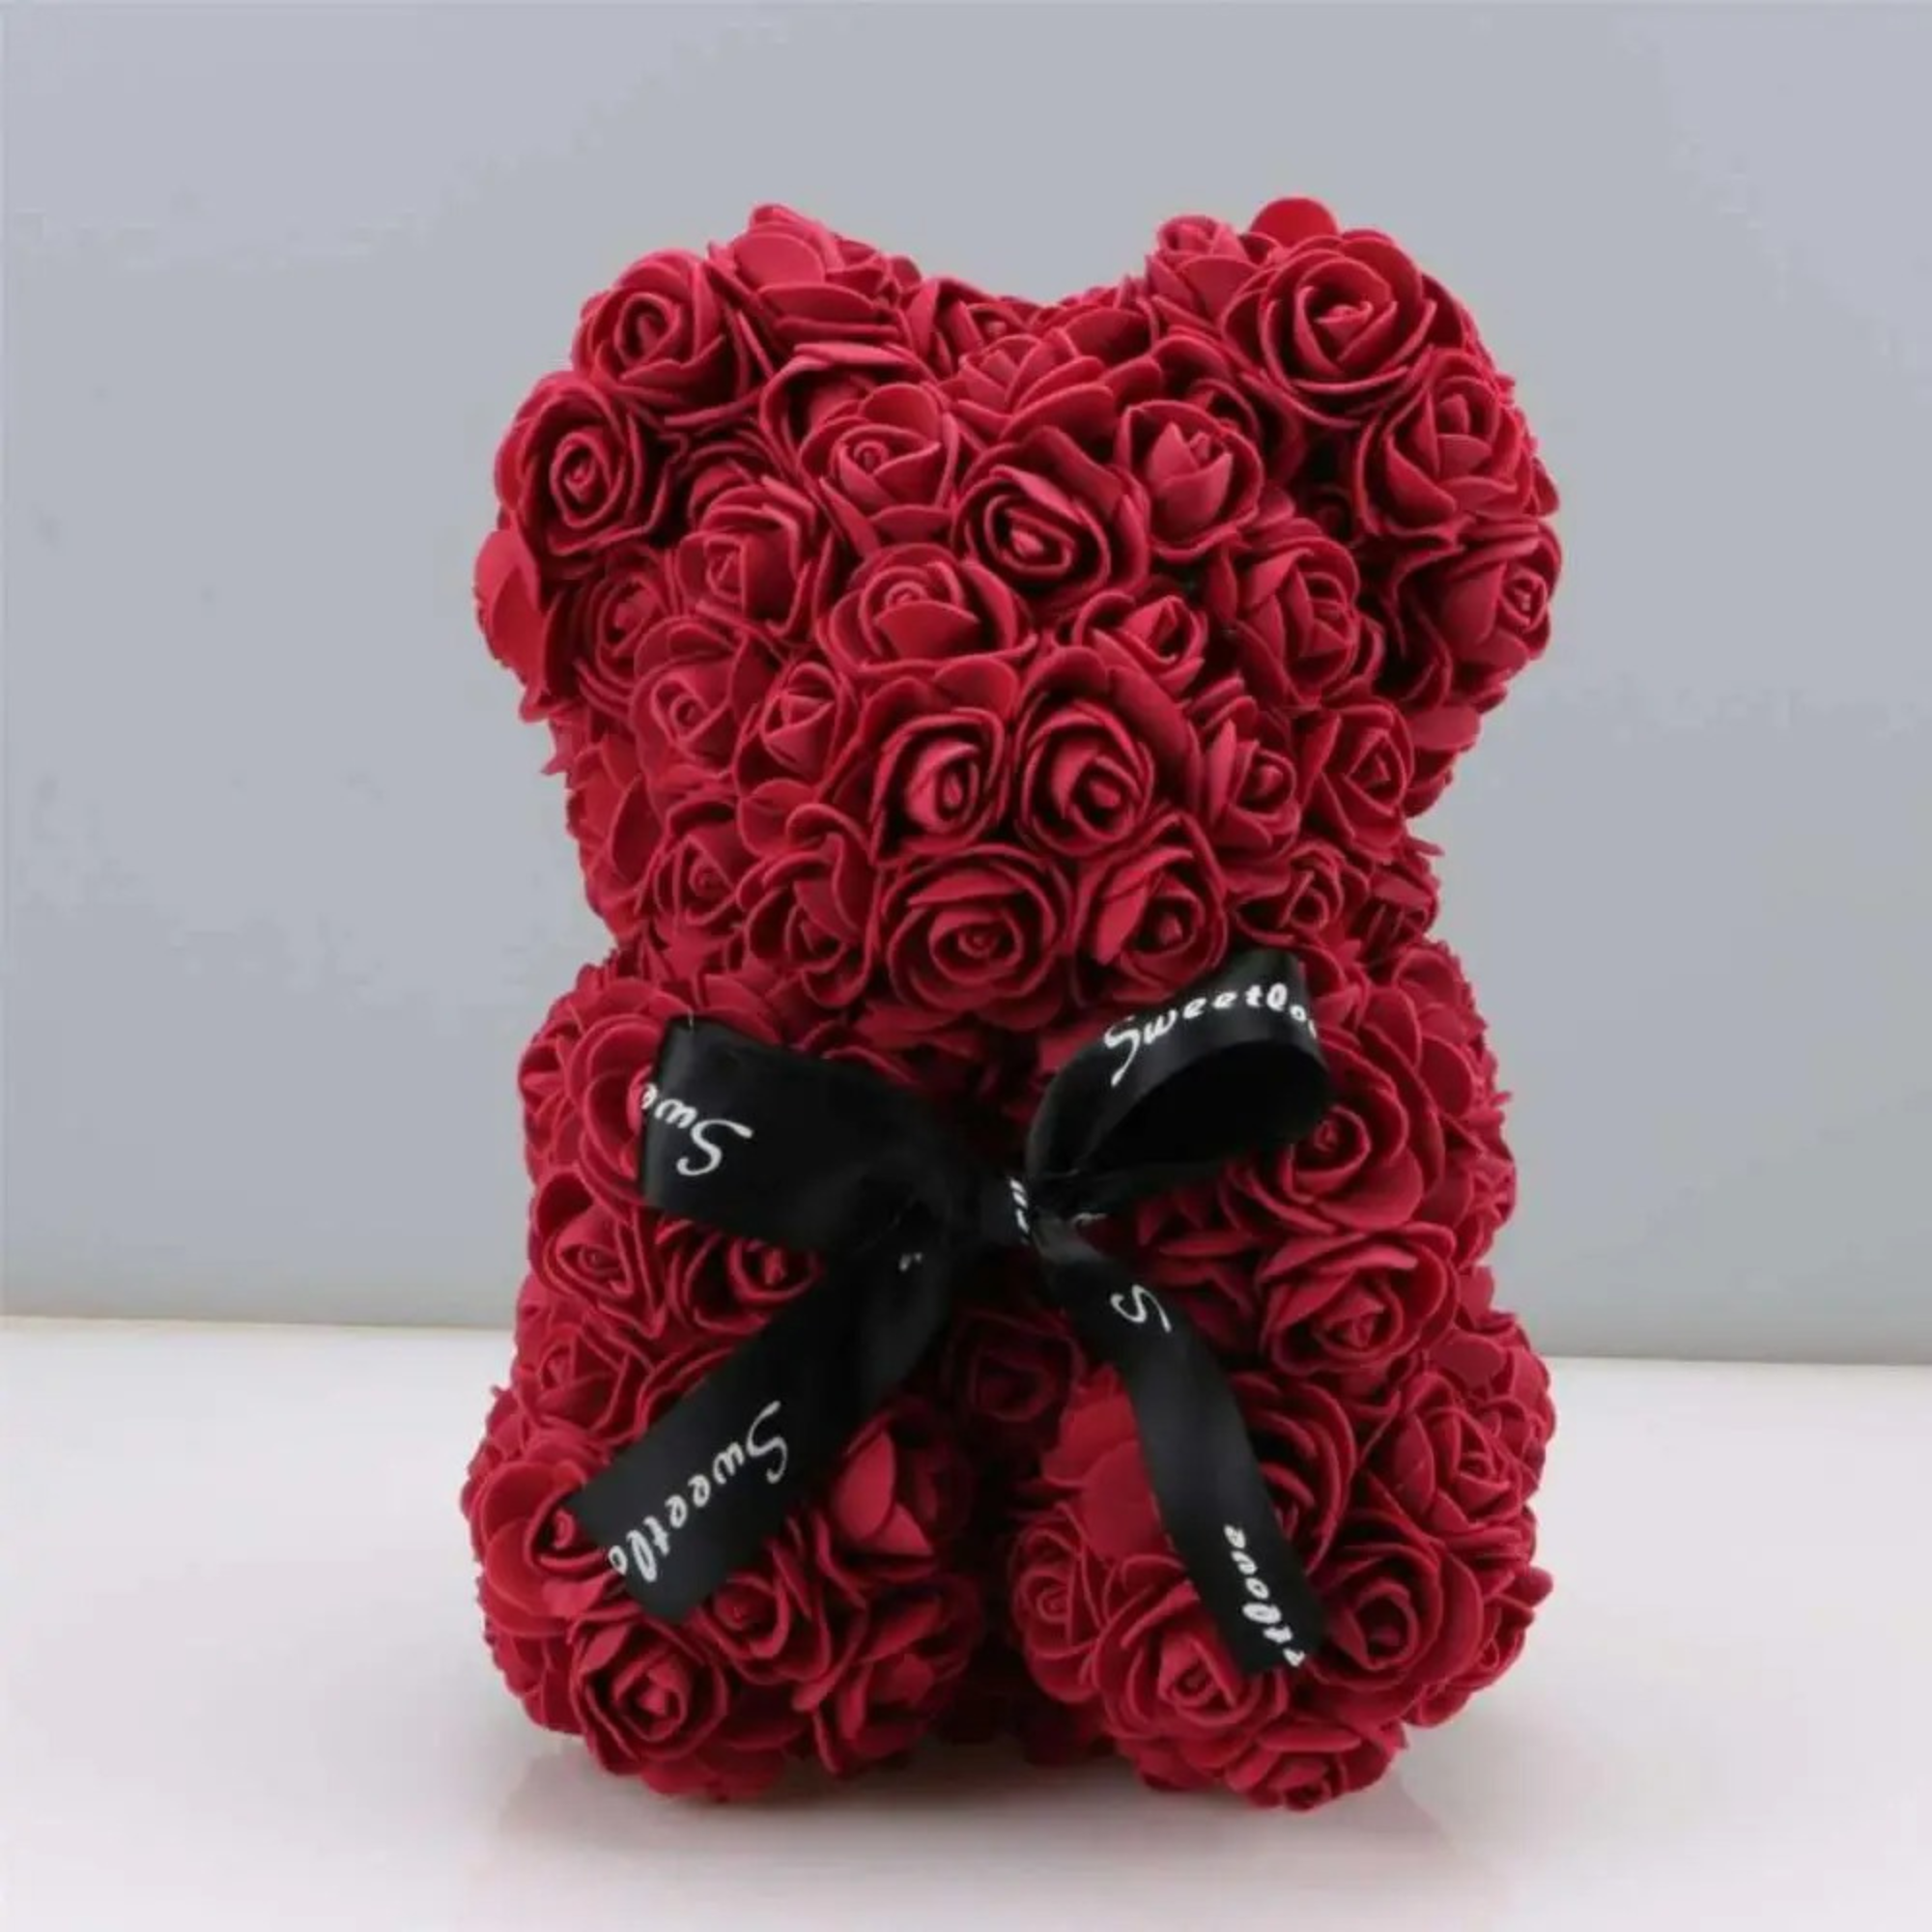 The Rose Teddy Bear ™